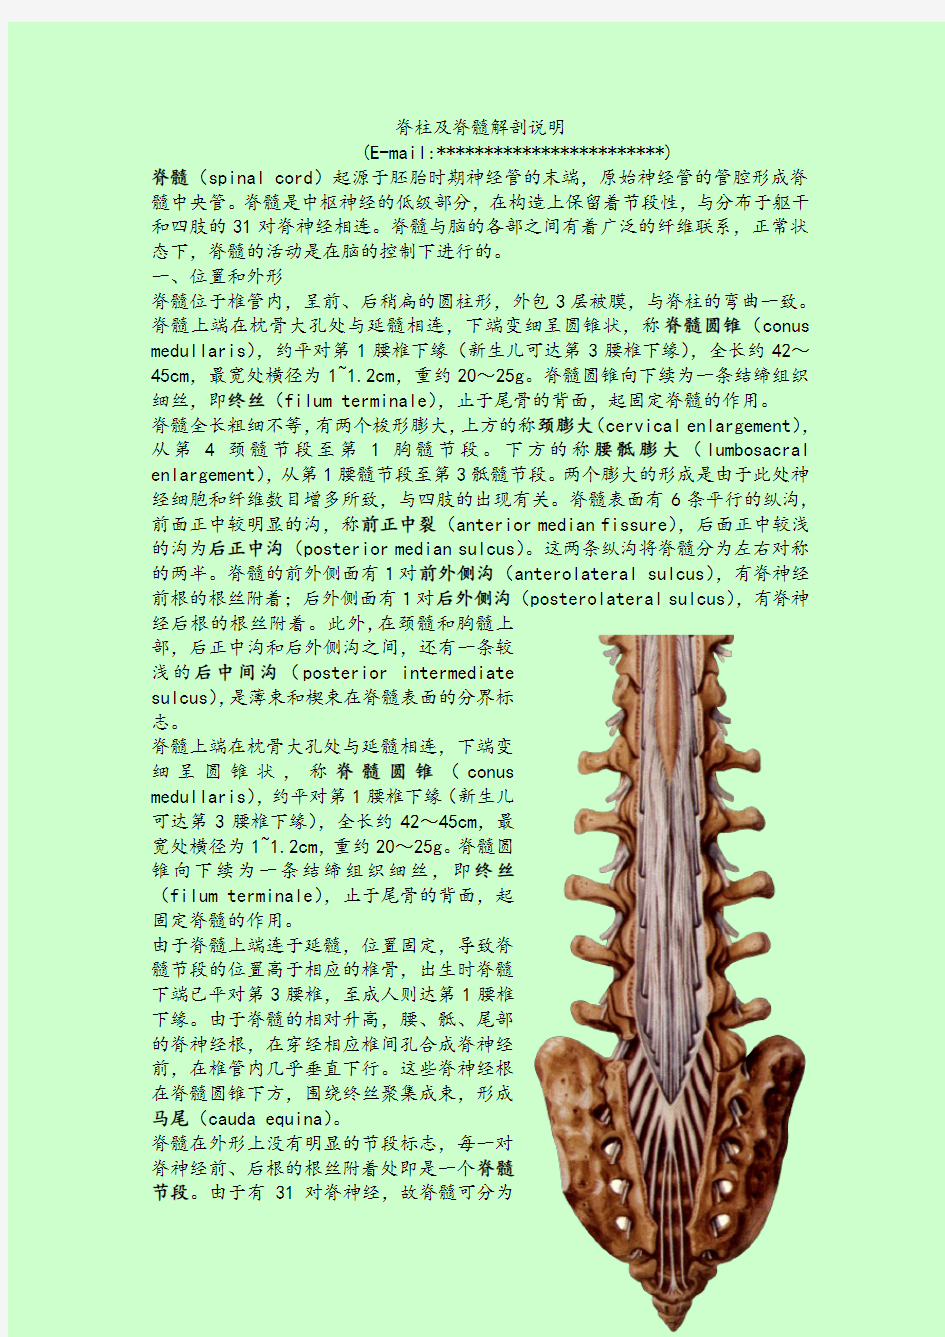 脊柱及脊髓解剖说明